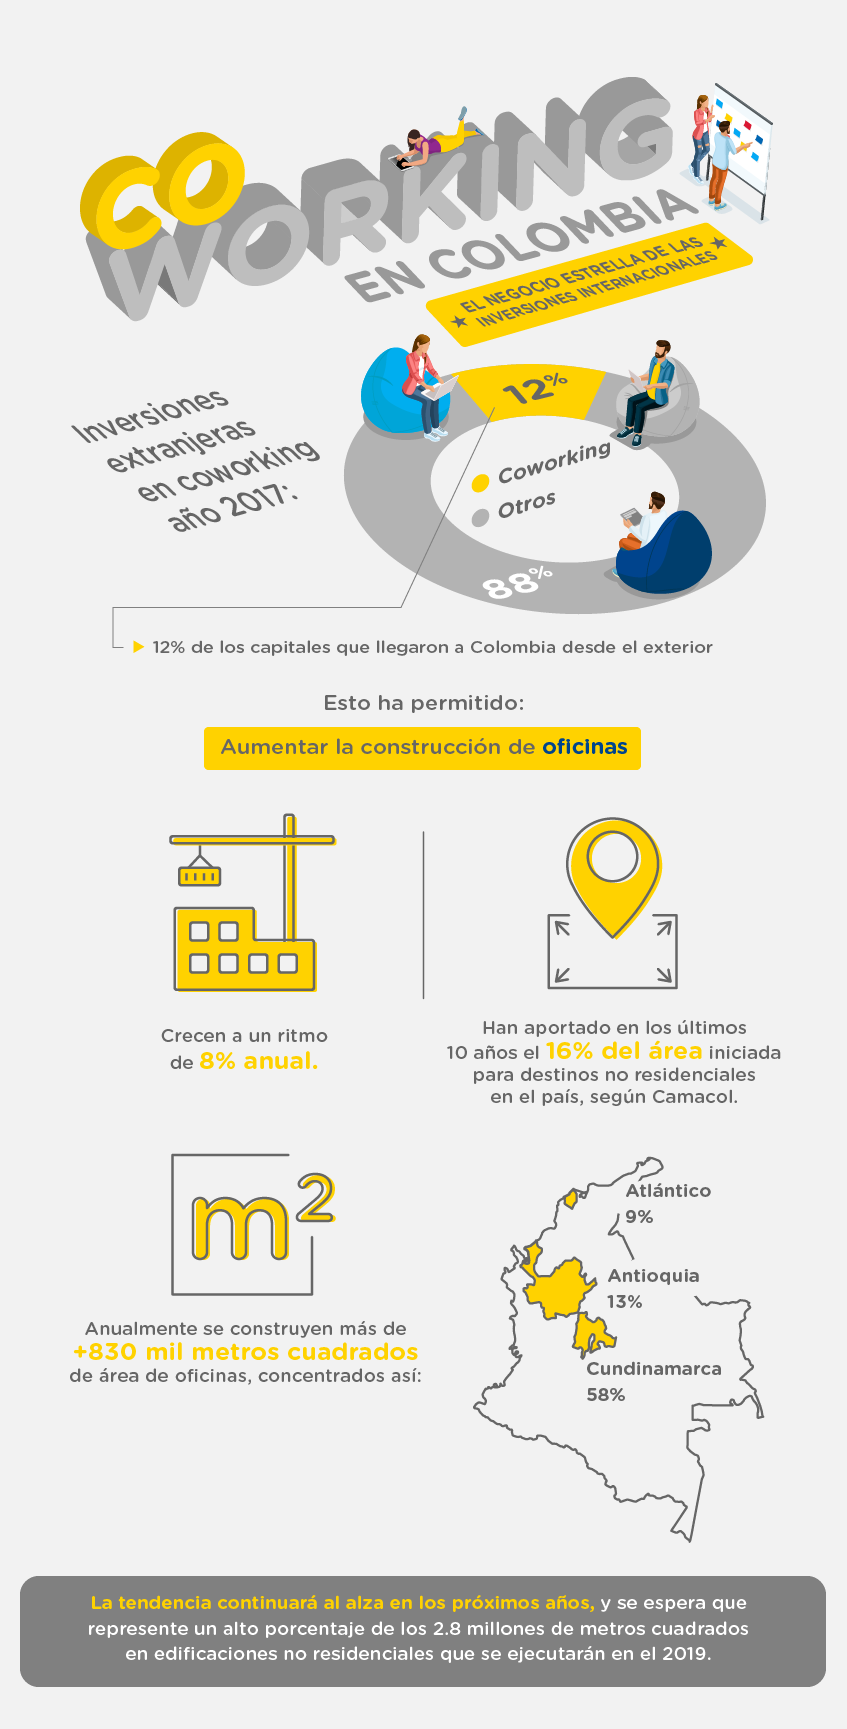 Infografía con las cifras de inversión y concentración del coworking en Colombia.